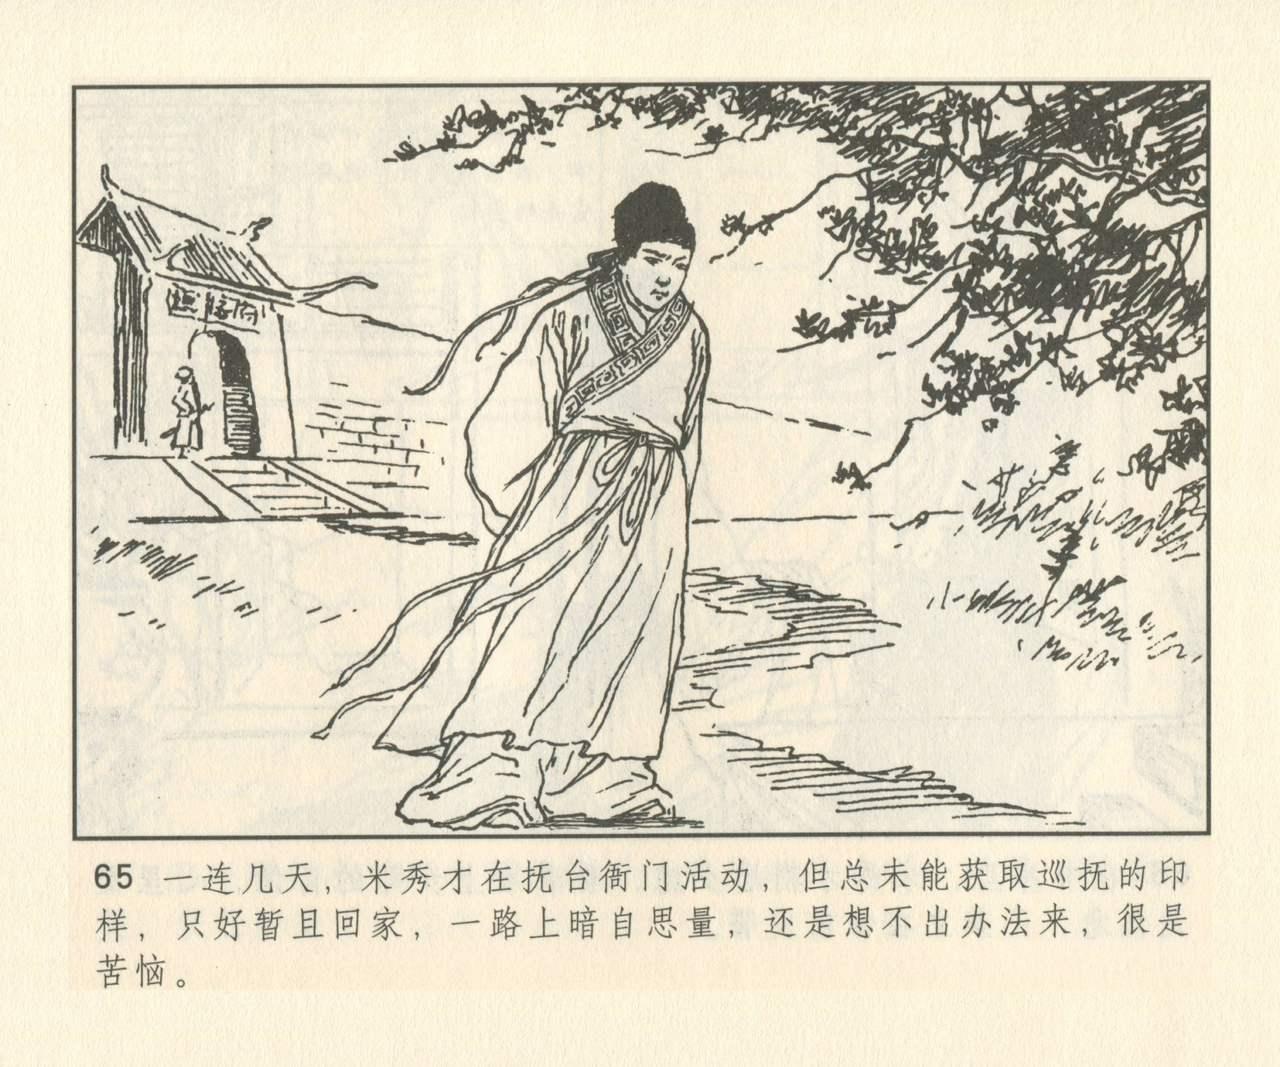 聊斋志异 张玮等绘 天津人民美术出版社 卷二十一 ~ 三十 193